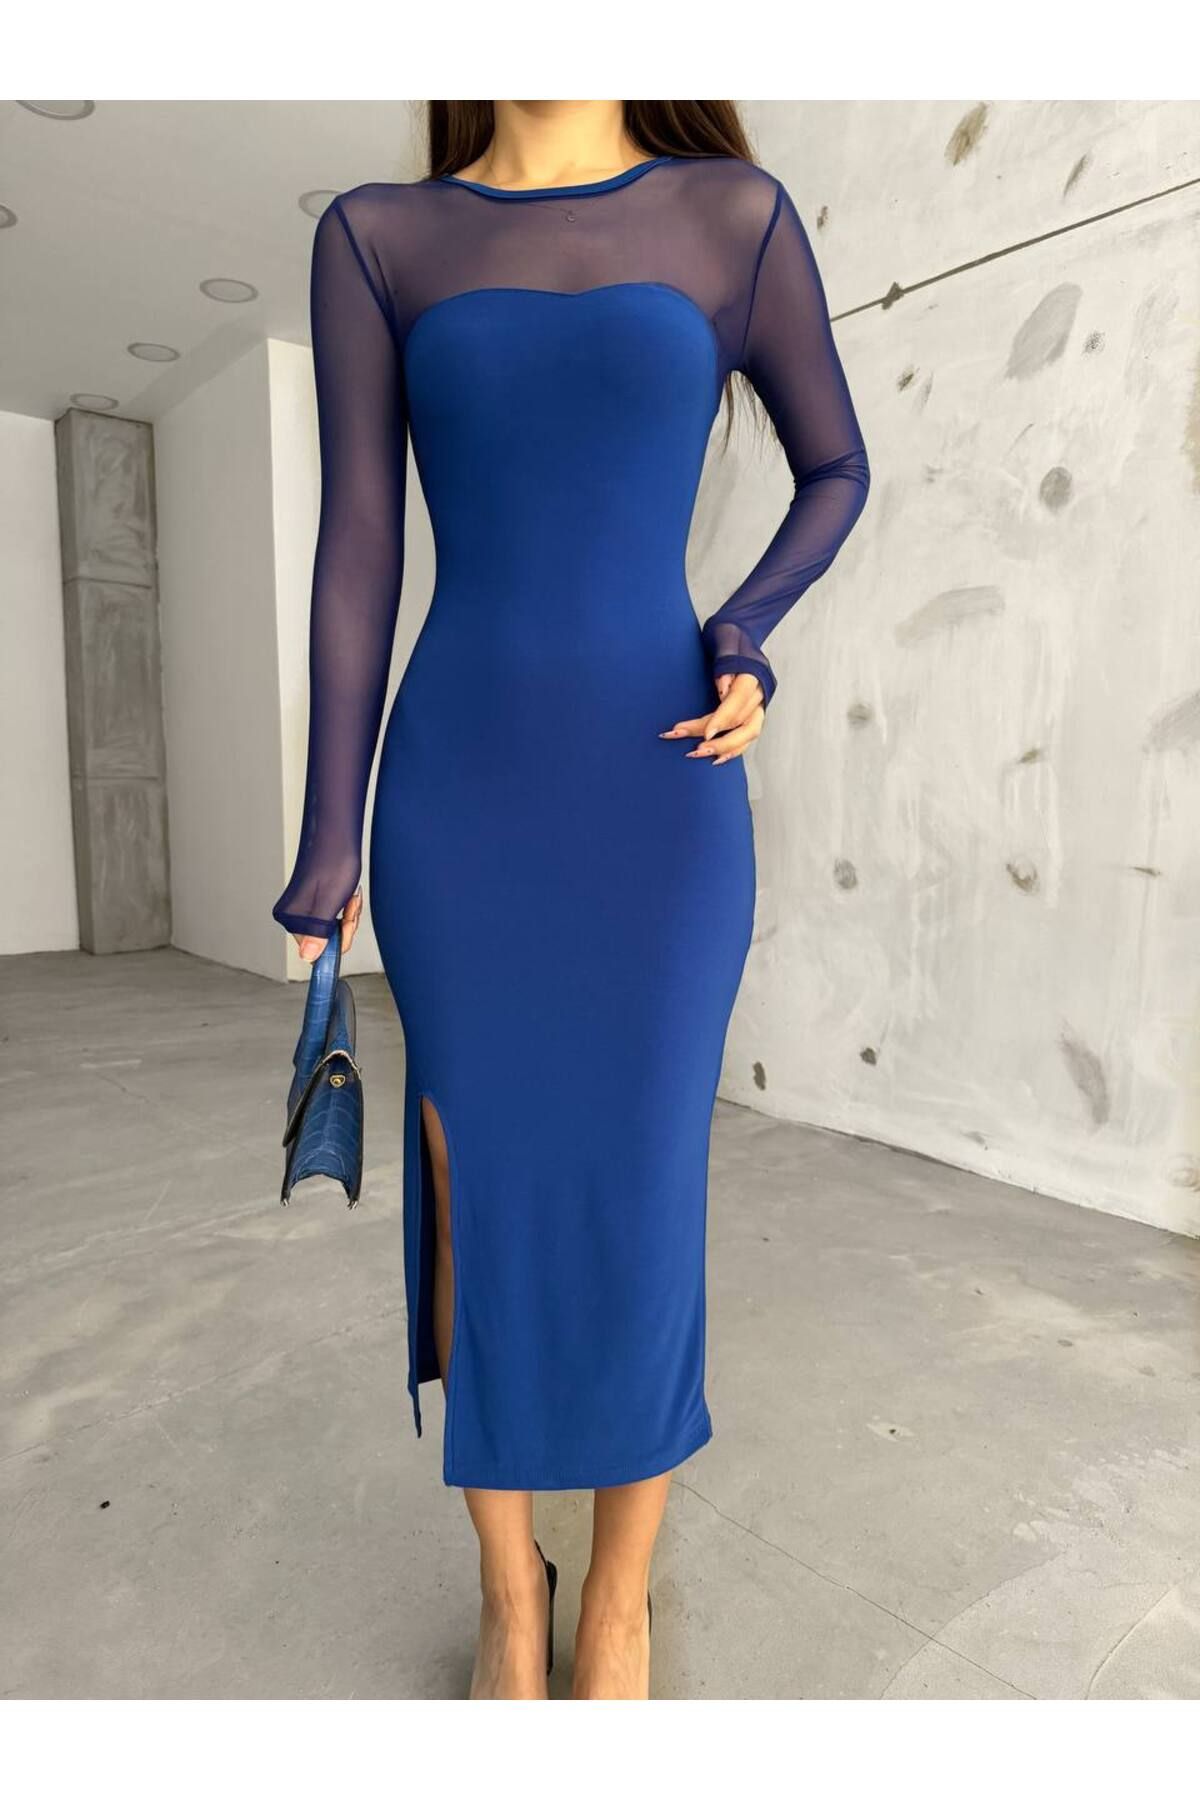 BİKELİFE Kadın Mavi Yırtmaç Detaylı Likralı Kalem Elbise